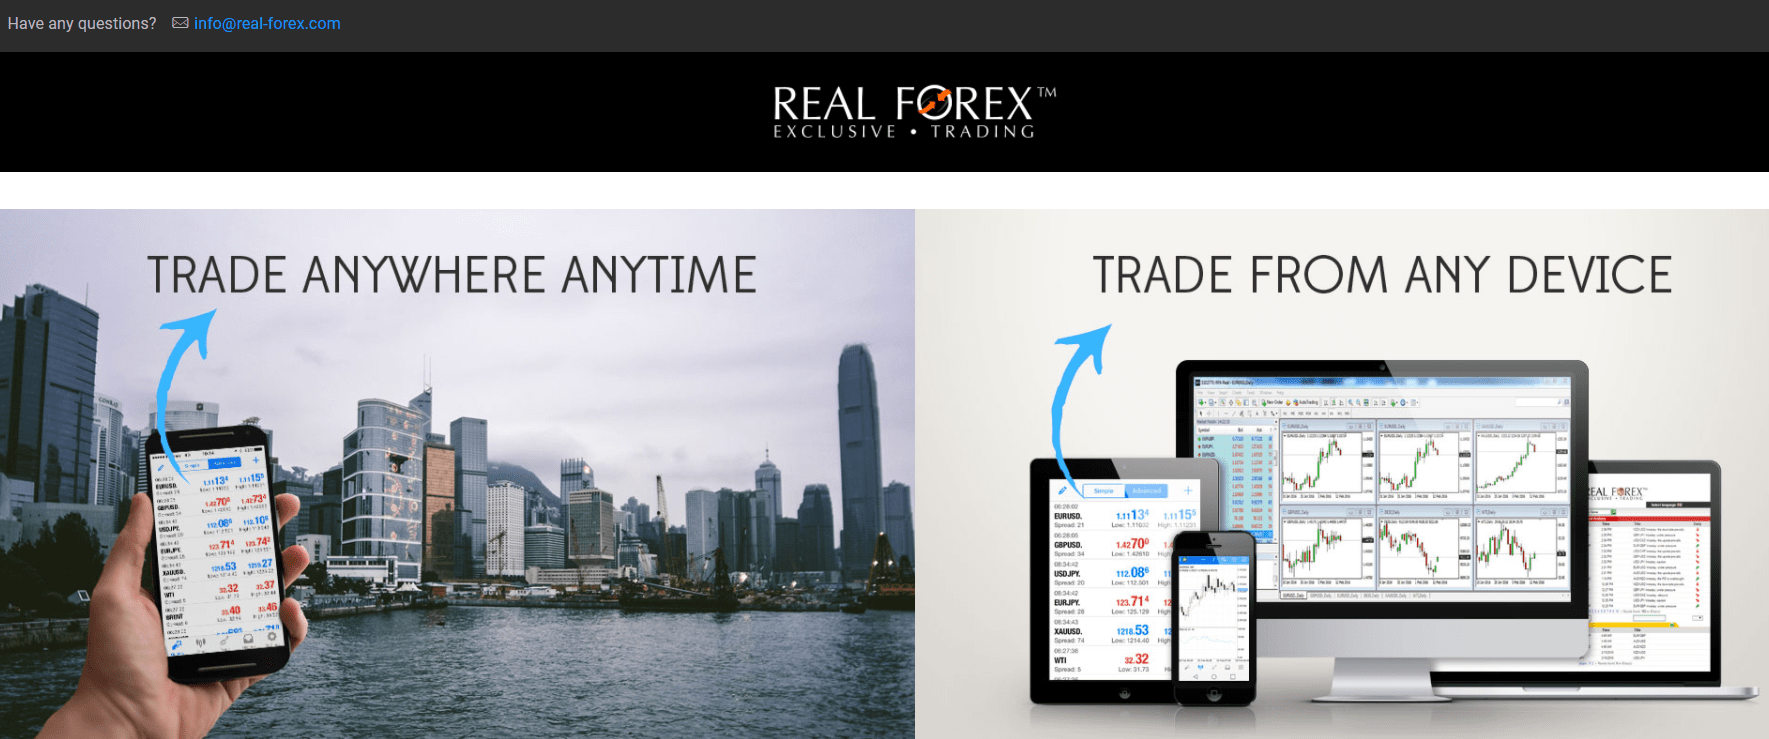 Forex real trade network penuntut umum dan penasehat hukum forex